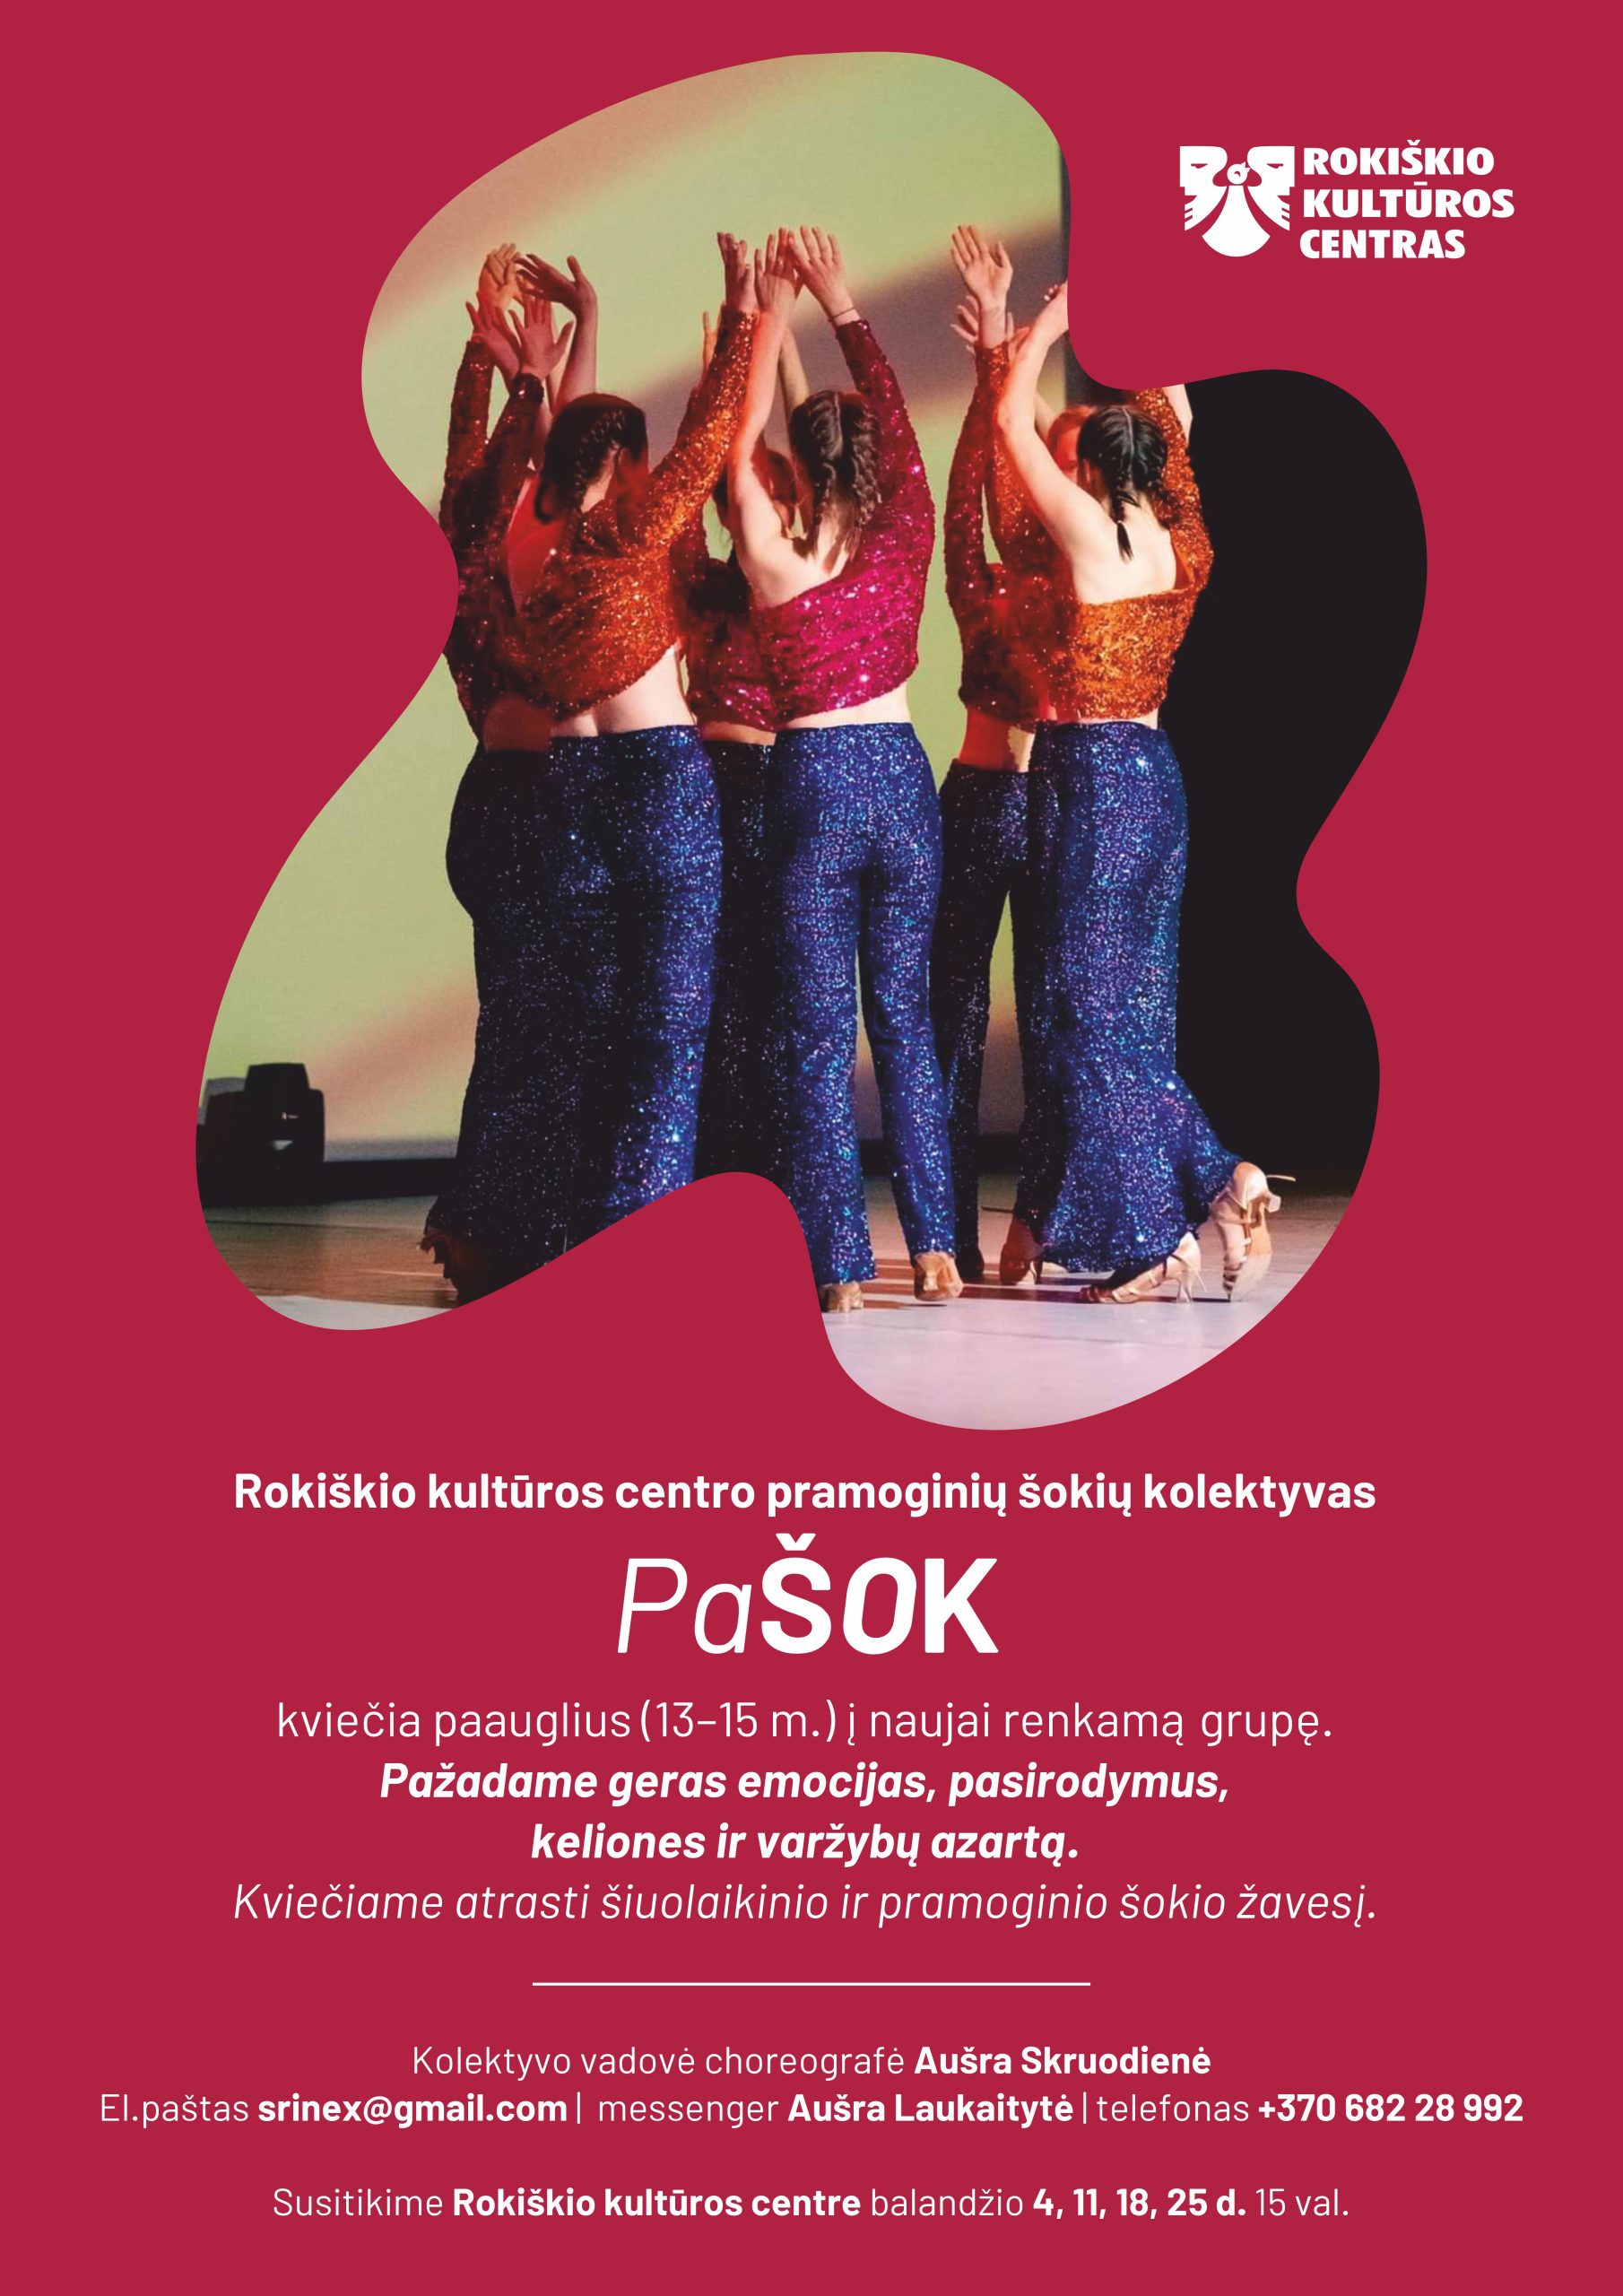 Rokiškio kultūros centro pramoginių šokių kolektyvas “Pašok” renka naują grupę